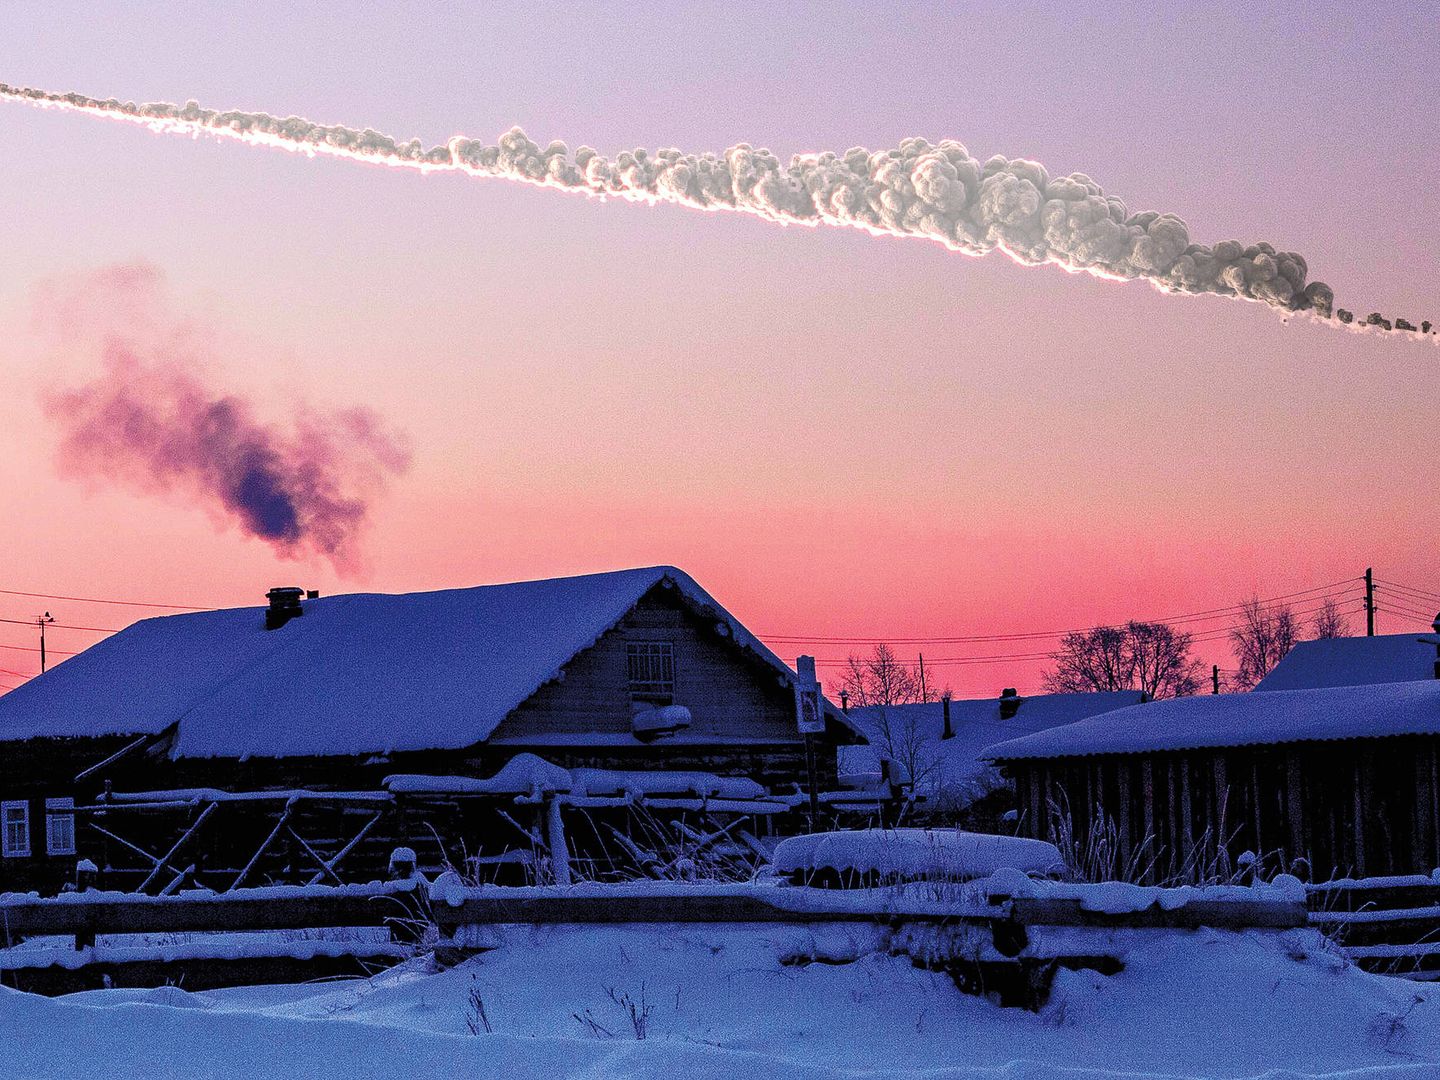 El reciente aviso del meteorito de Chelyabinsk. (Sandia National Laboratories)